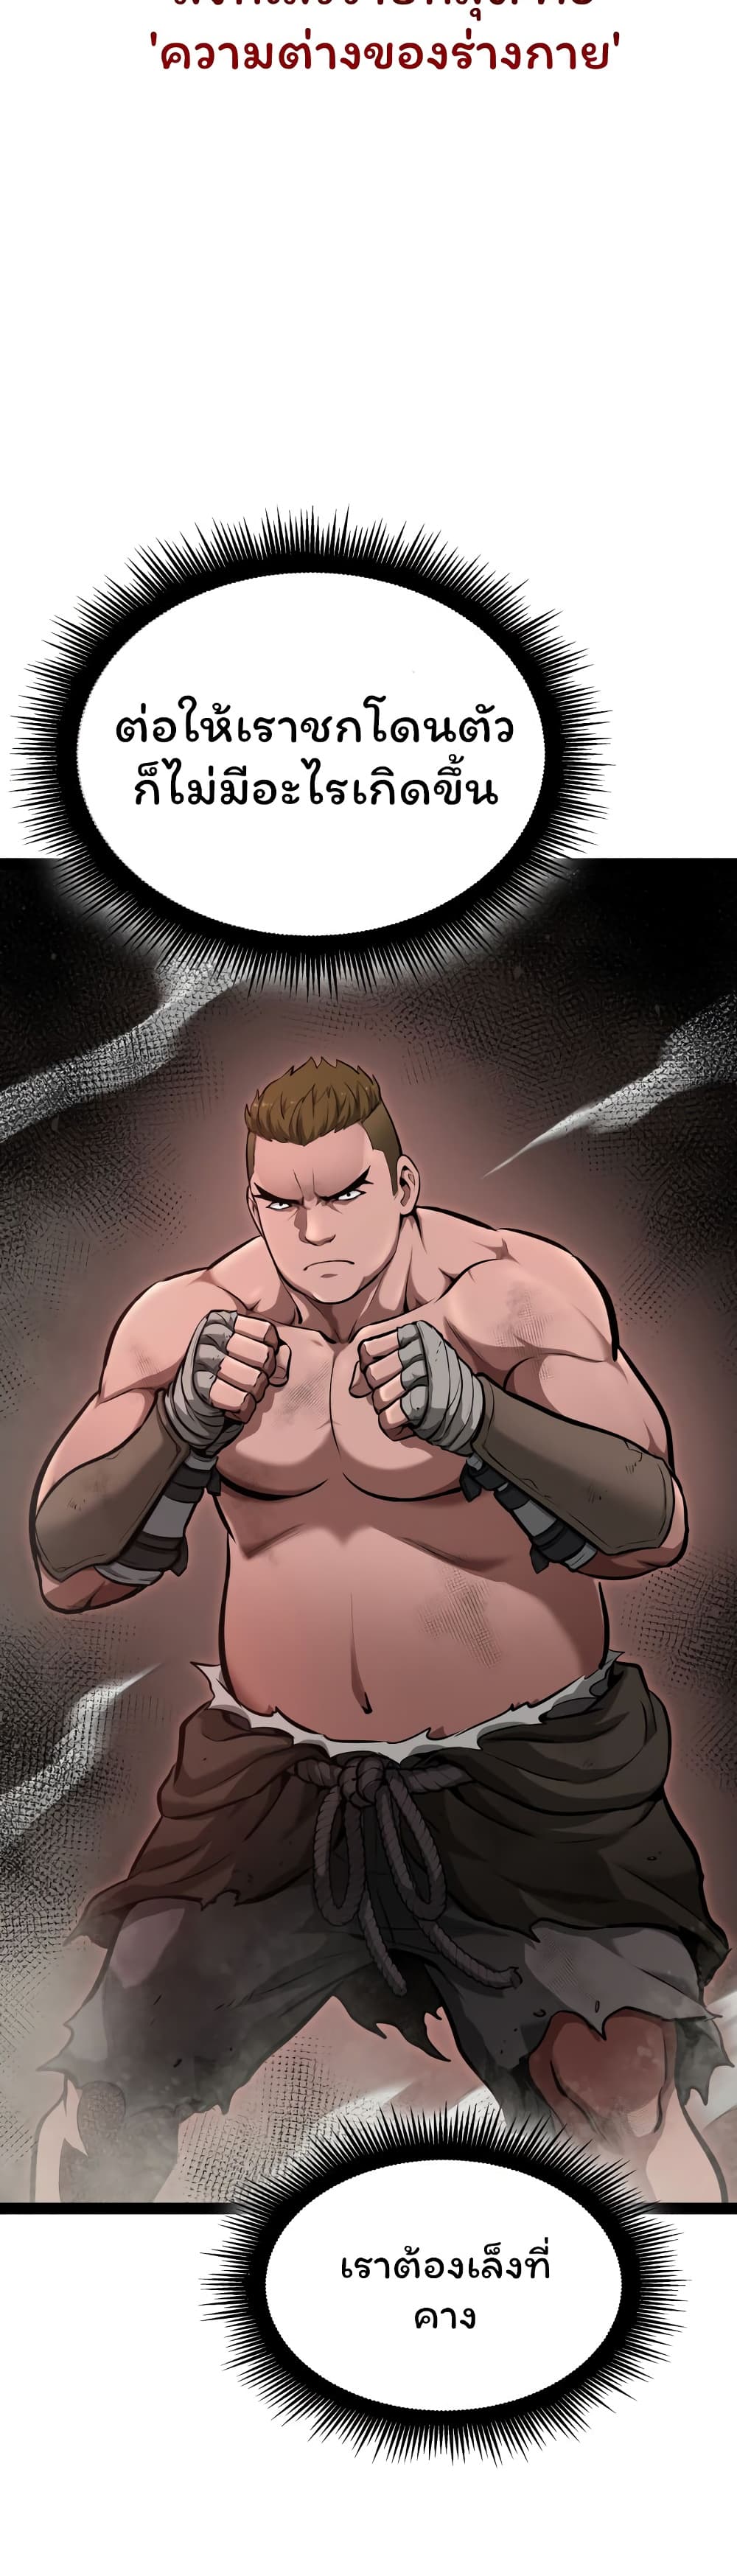 Boxer Kali 4-4